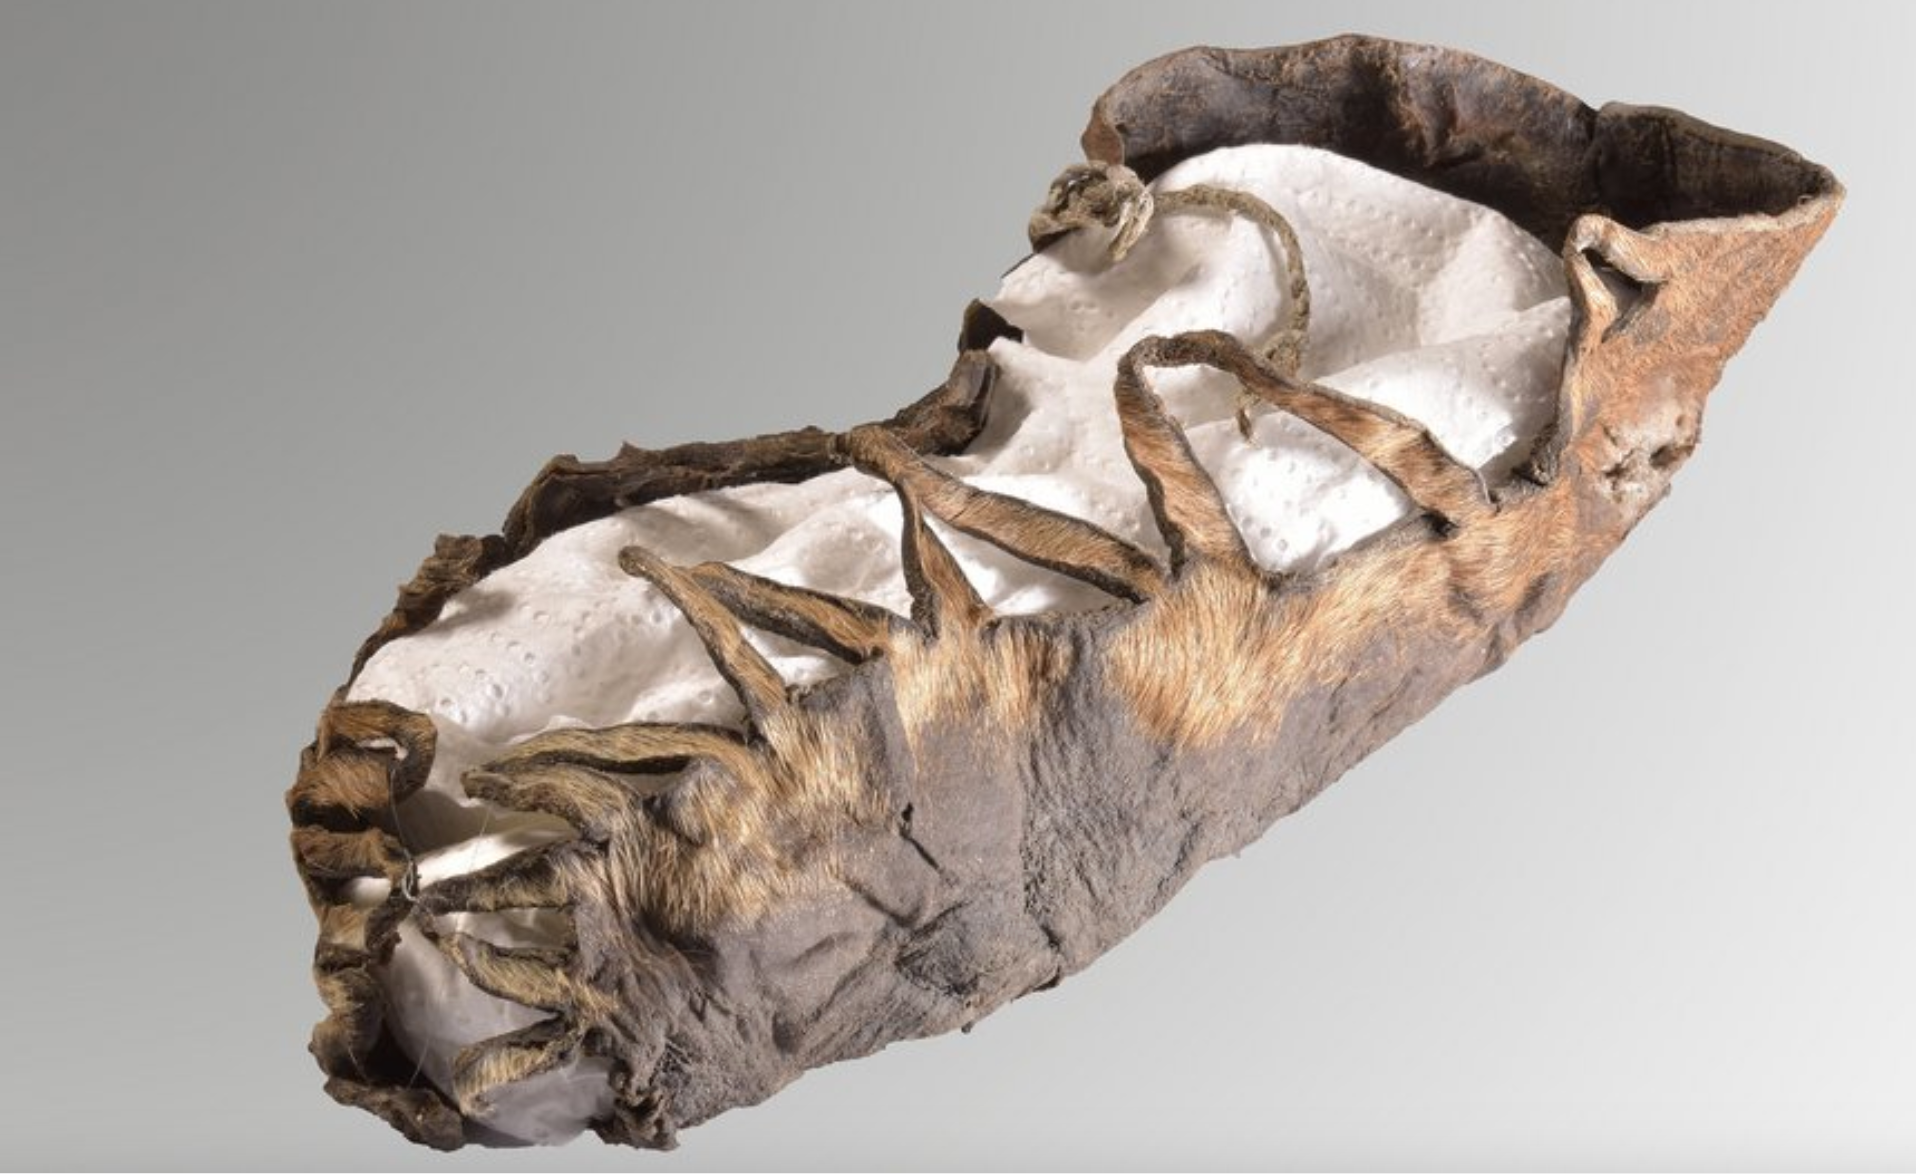 Detská obuv z doby železnej objavená nemeckým banským múzeom v Bochume